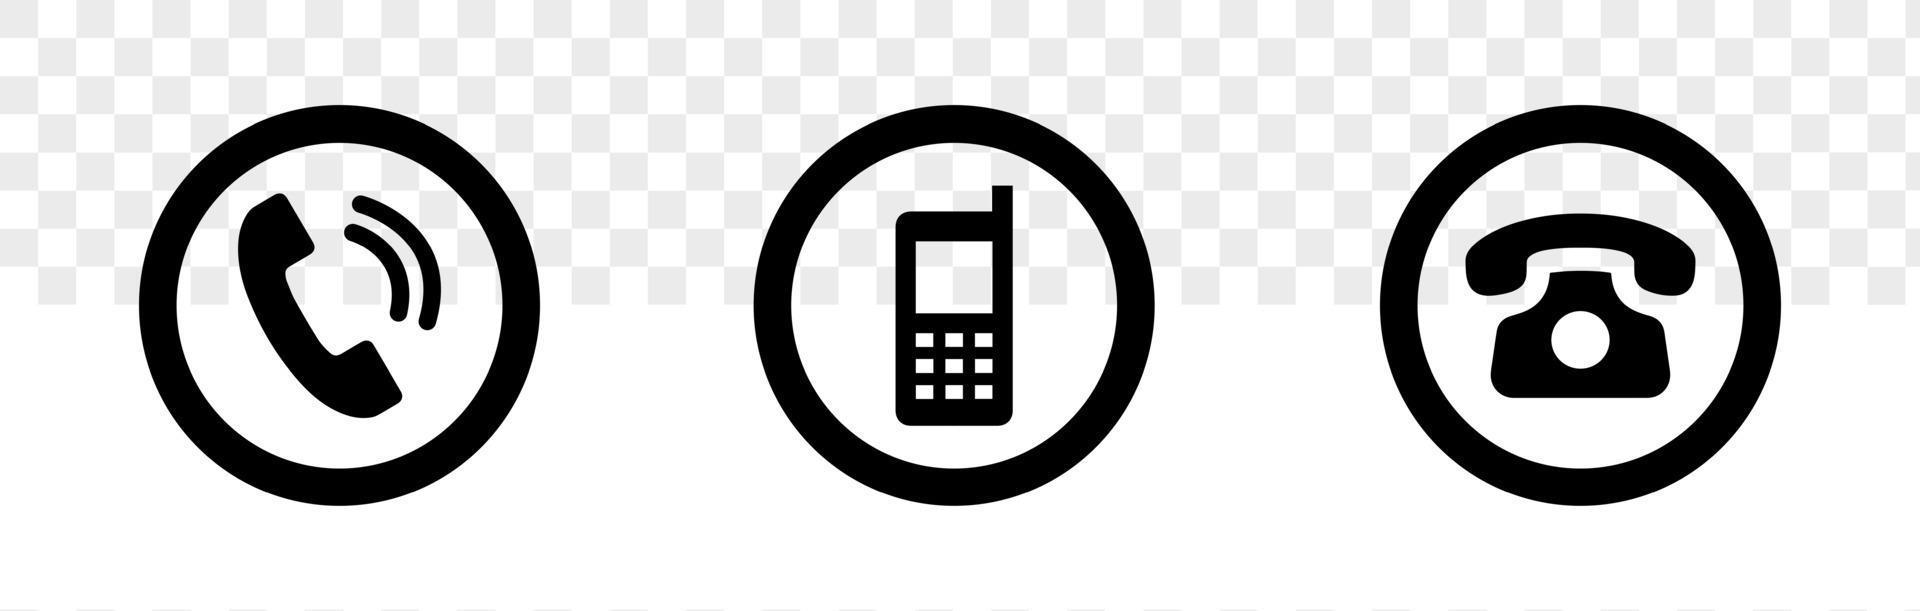 Isolated Telephone Simbols On White Background Phone Icon Set 4435798